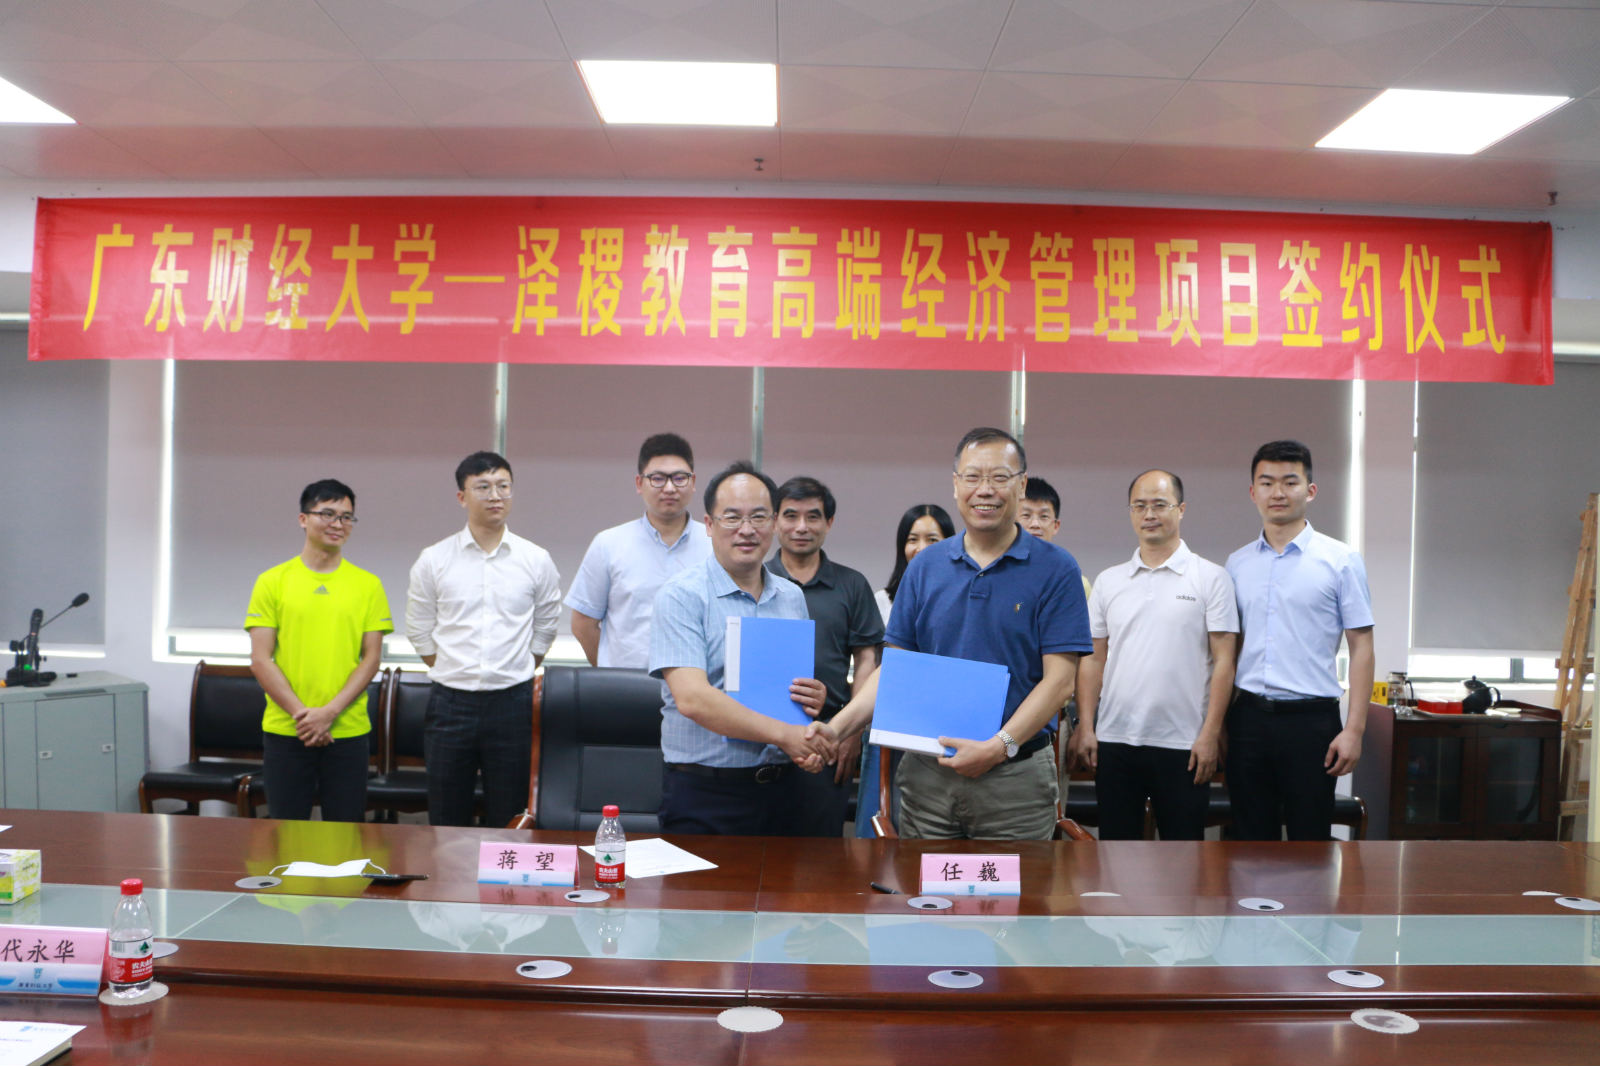 热烈祝贺广东财经大学工商管理学院与泽稷教育举行高端经济管理项目签约仪式